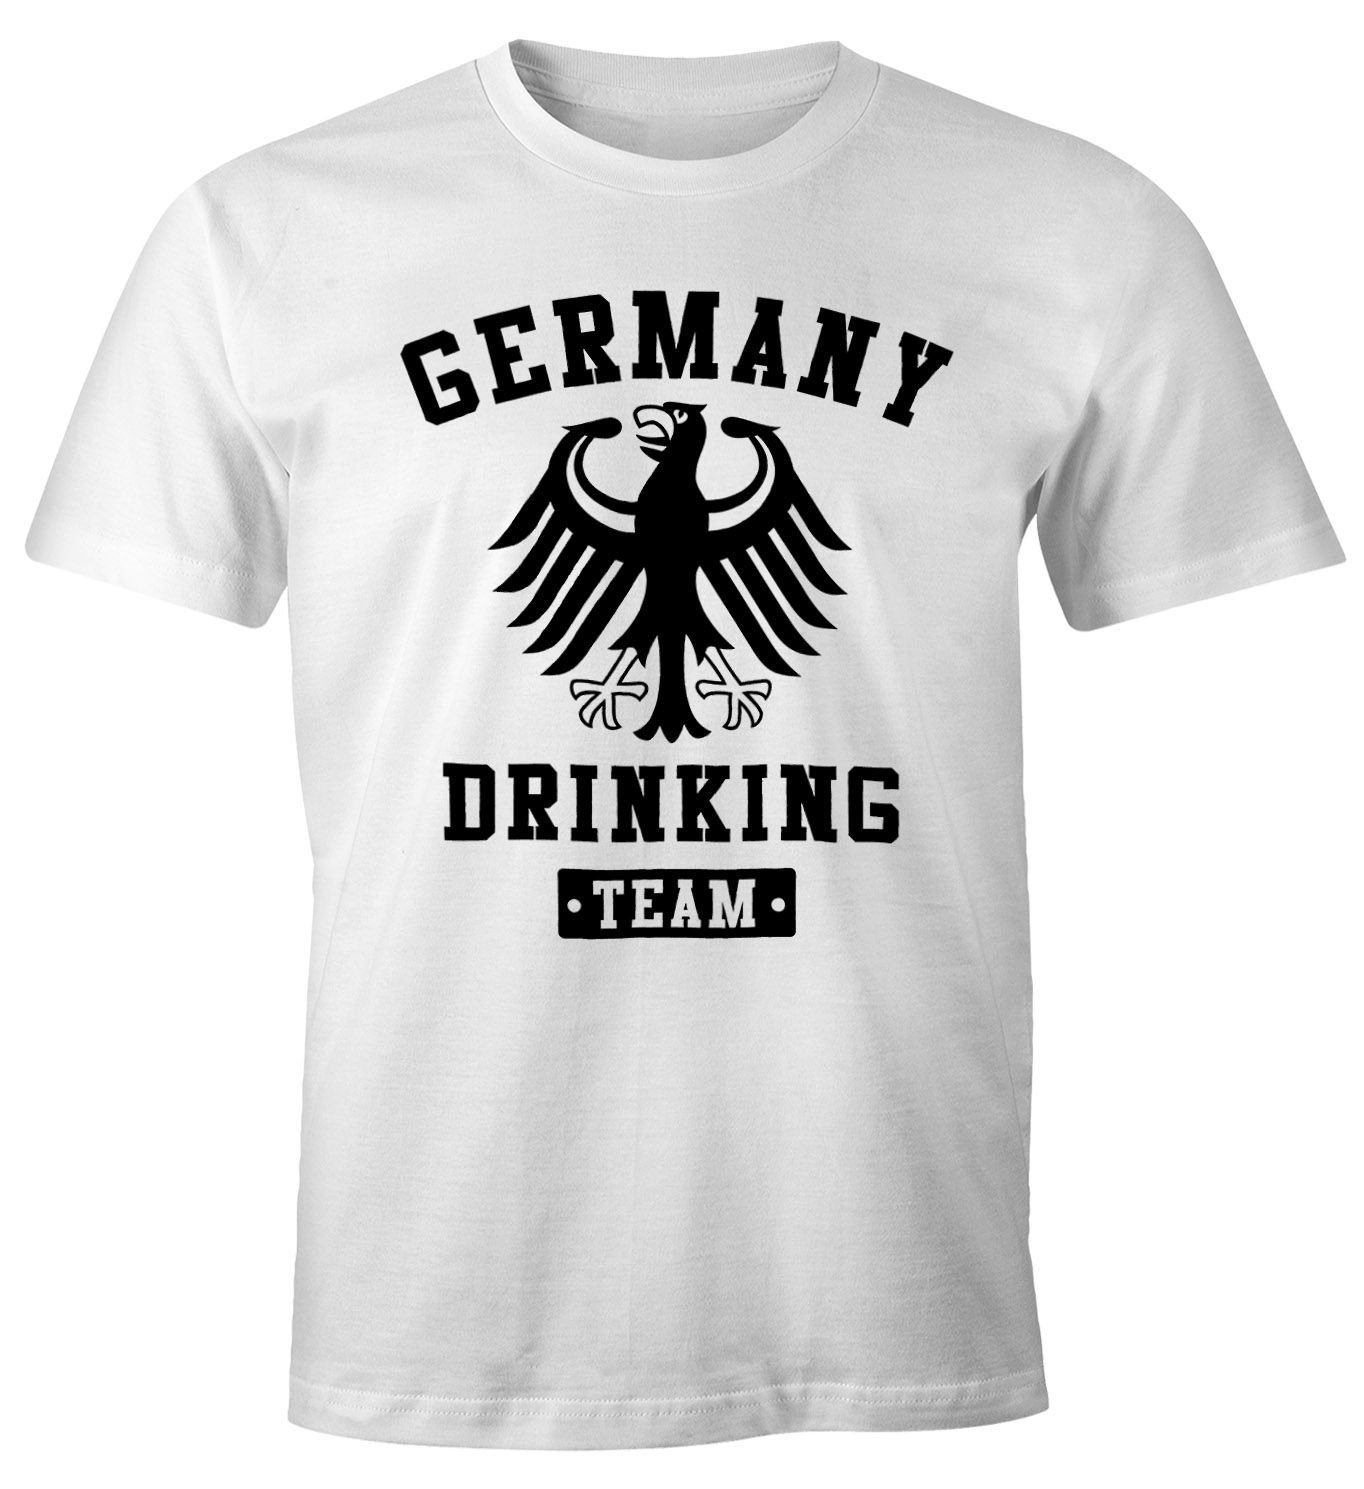 MoonWorks Print-Shirt Deutschland Herren T-Shirt Germany Drinking Team Bier Adler Fun-Shirt Moonworks® mit Print weiß